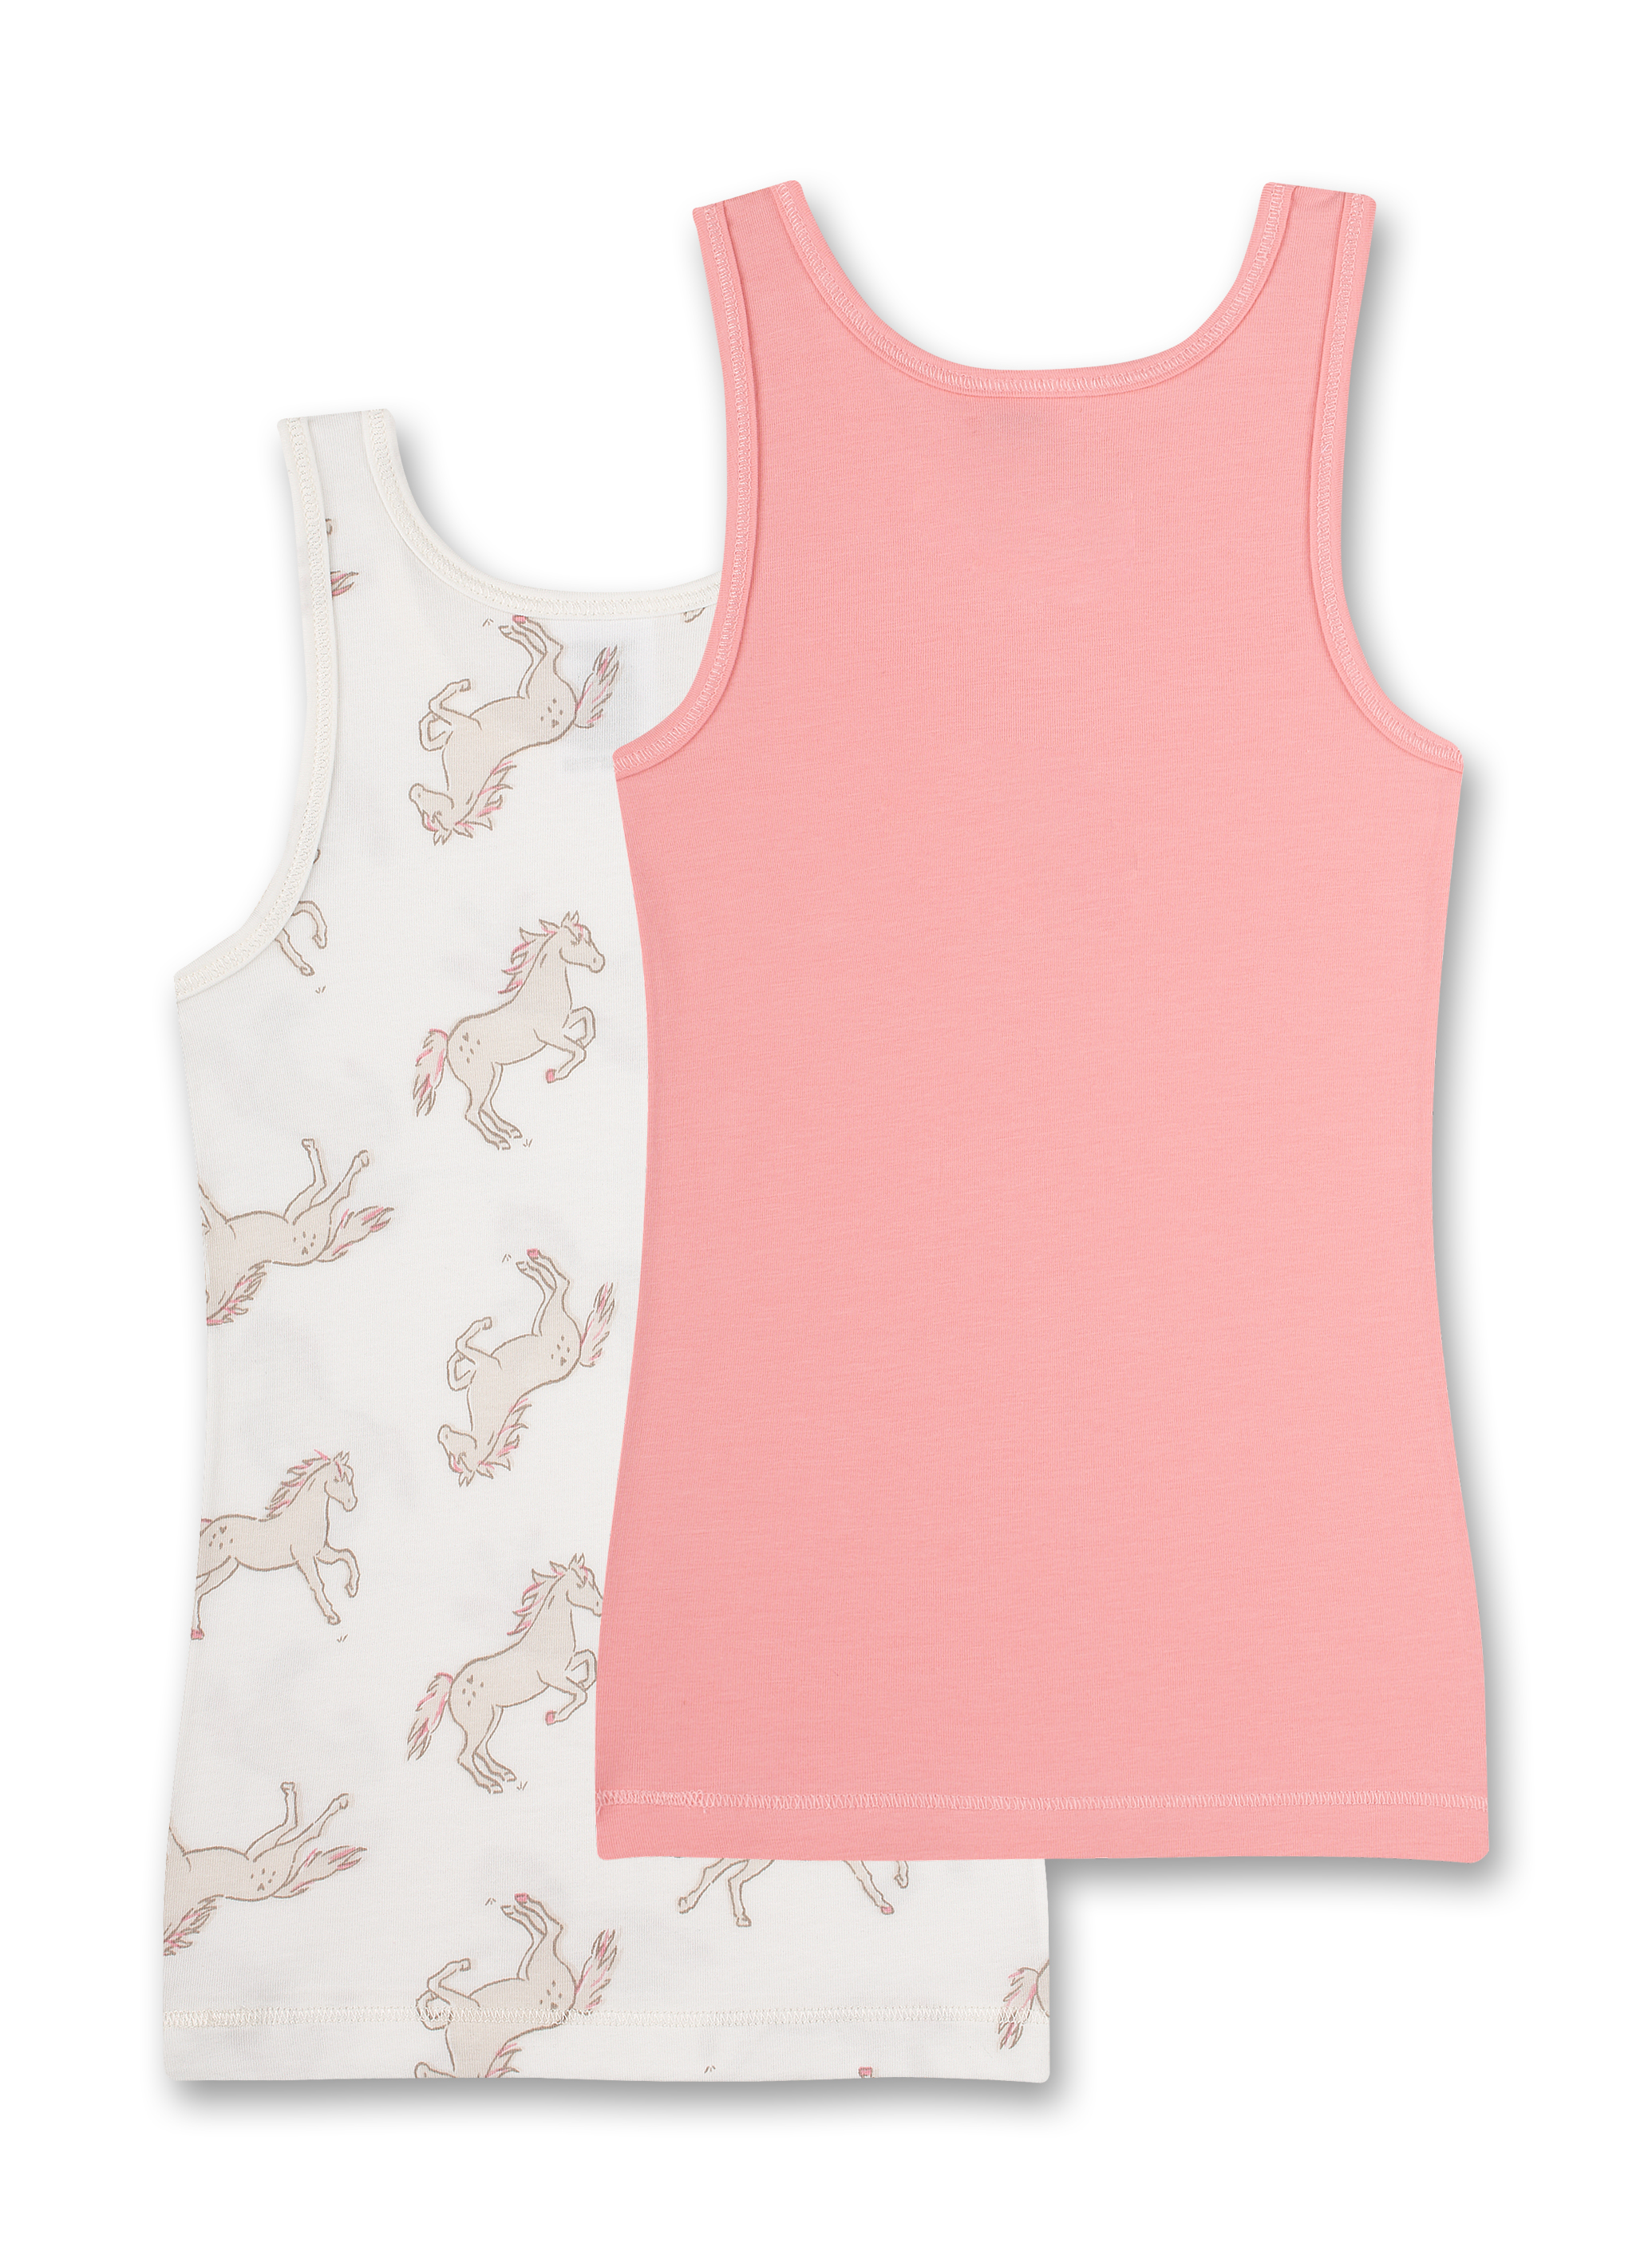 Mädchen-Unterhemd (Dopplepack) Off-White und Rosa